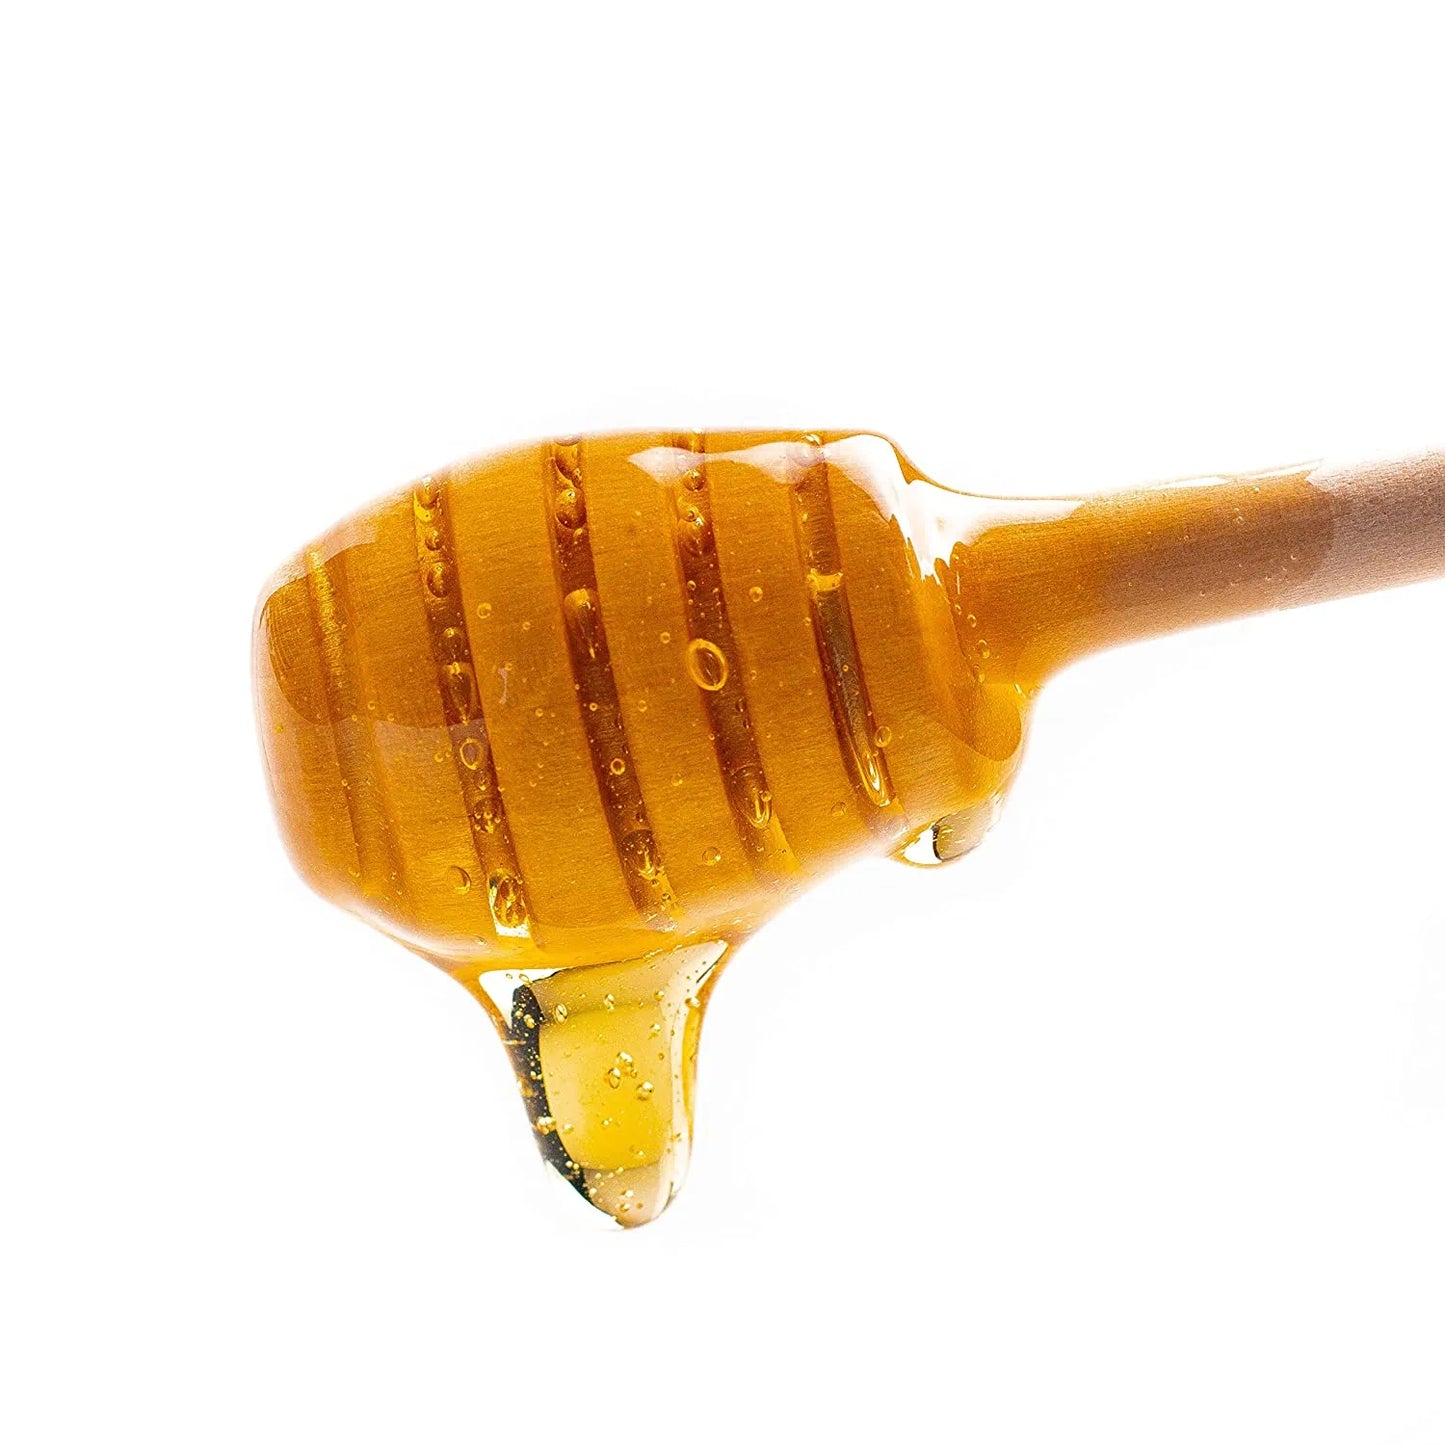 Wholesome Yum - Honey Substitute - Original (11 oz)